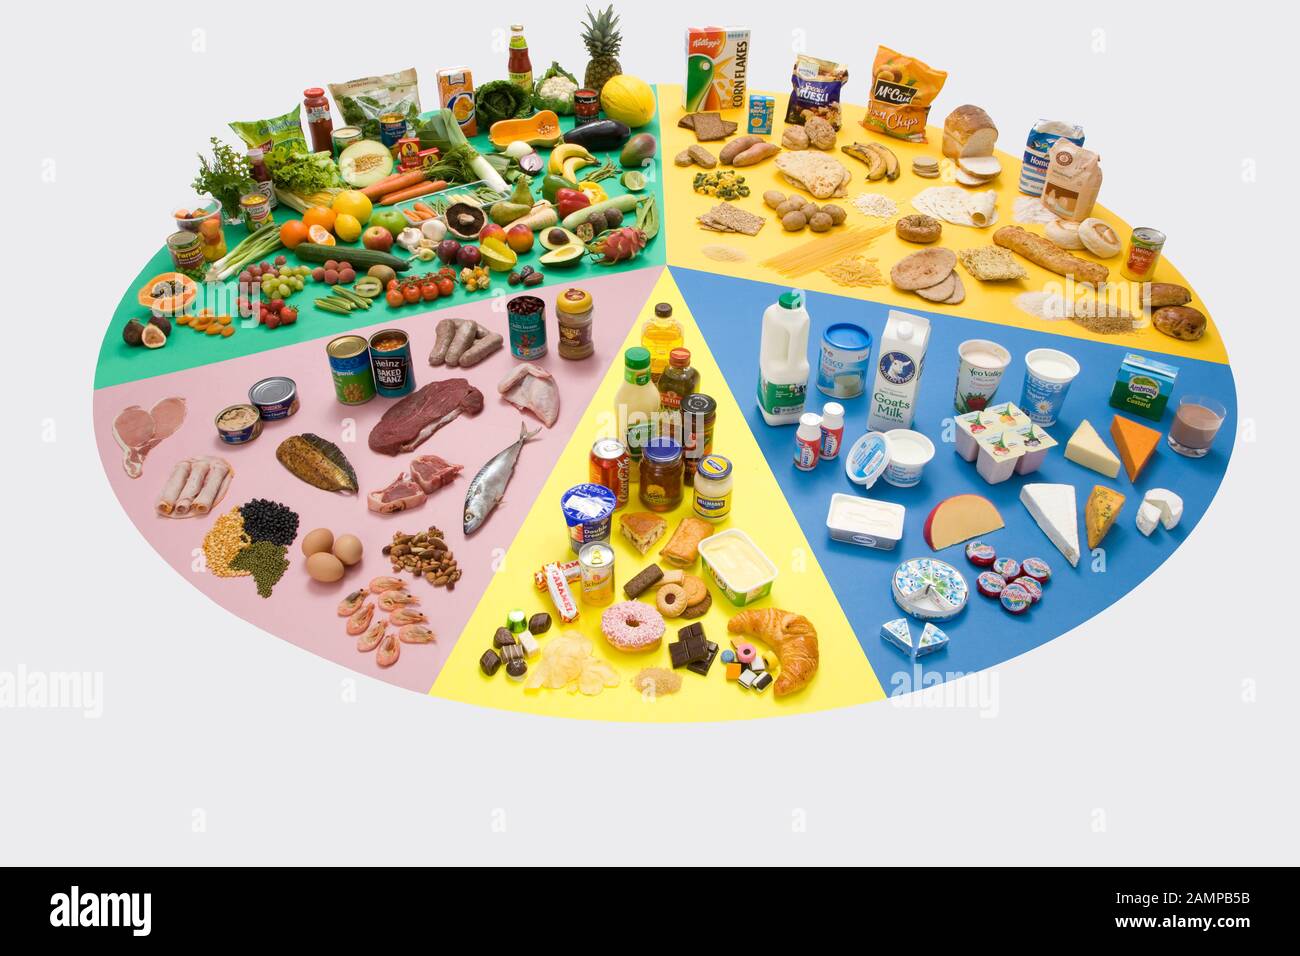 Essen Rad mit allen verschiedenen Nahrungsmittelgruppen für eine gesunde  Ernährung Diät - Milchprodukte, Zucker, Proteine, Obst und Gemüse,  Kohlenhydrate Stockfotografie - Alamy